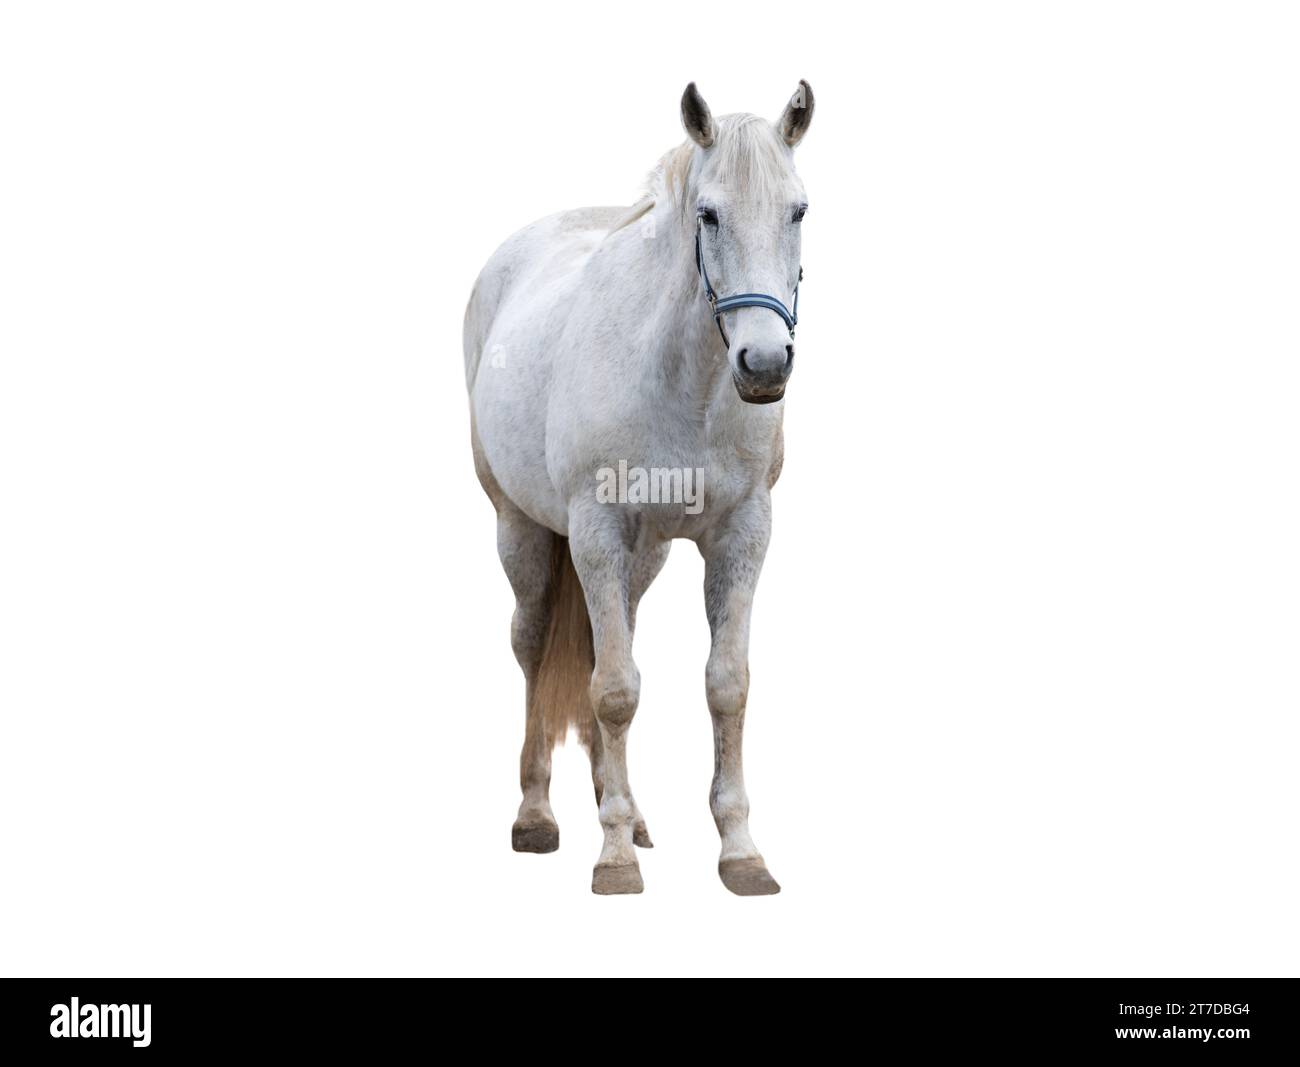 white thoroughbred horse isolated on white background Stock Photo